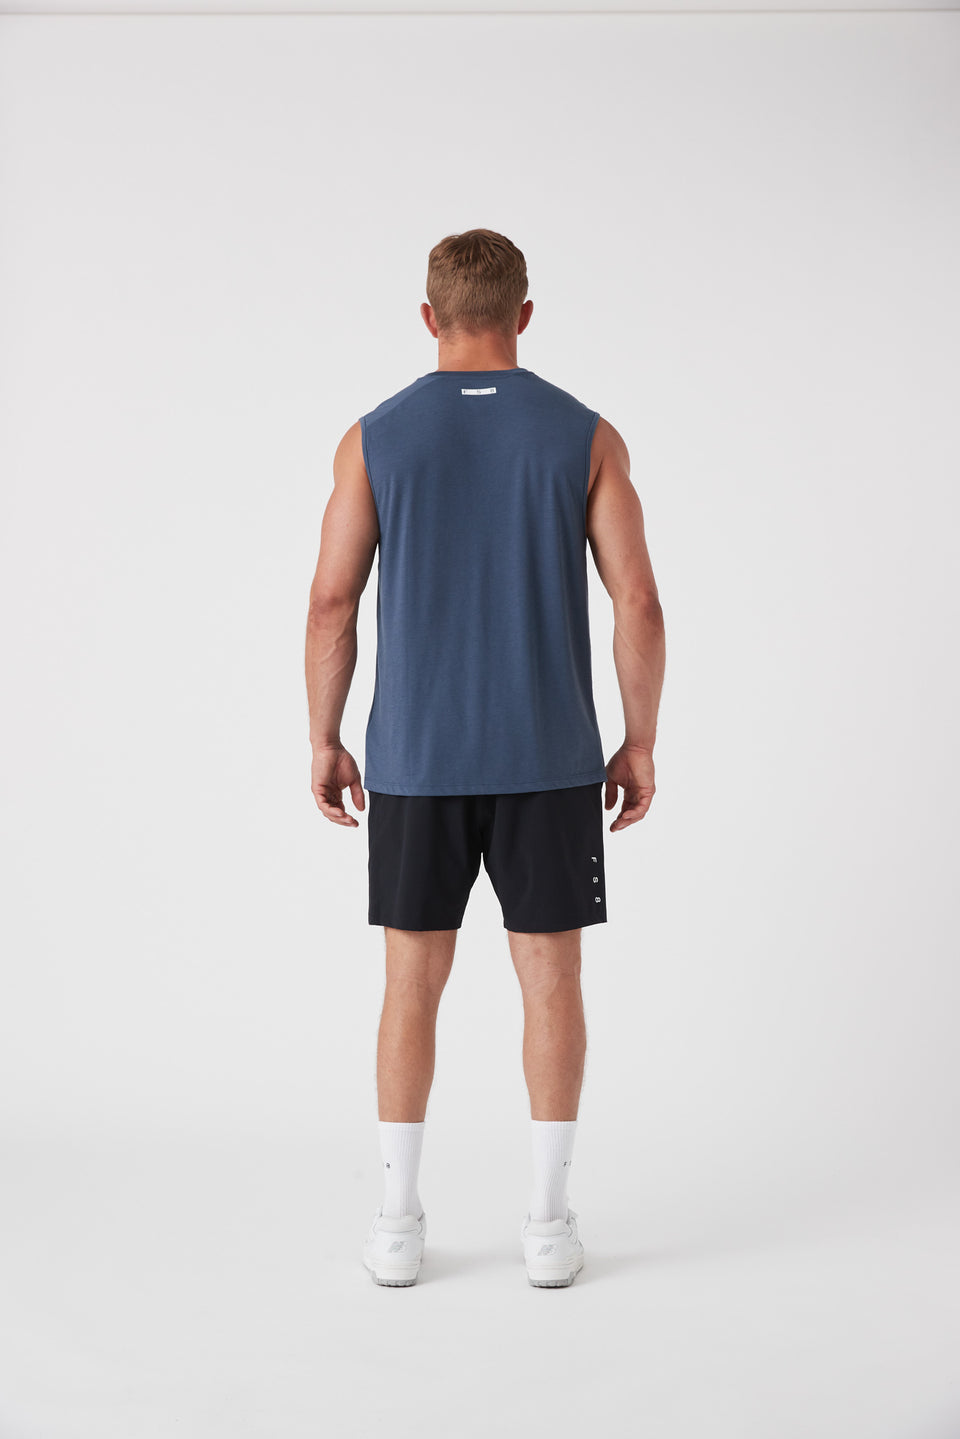 FS8 Merchandise Men's Oxy Muscle - Slate